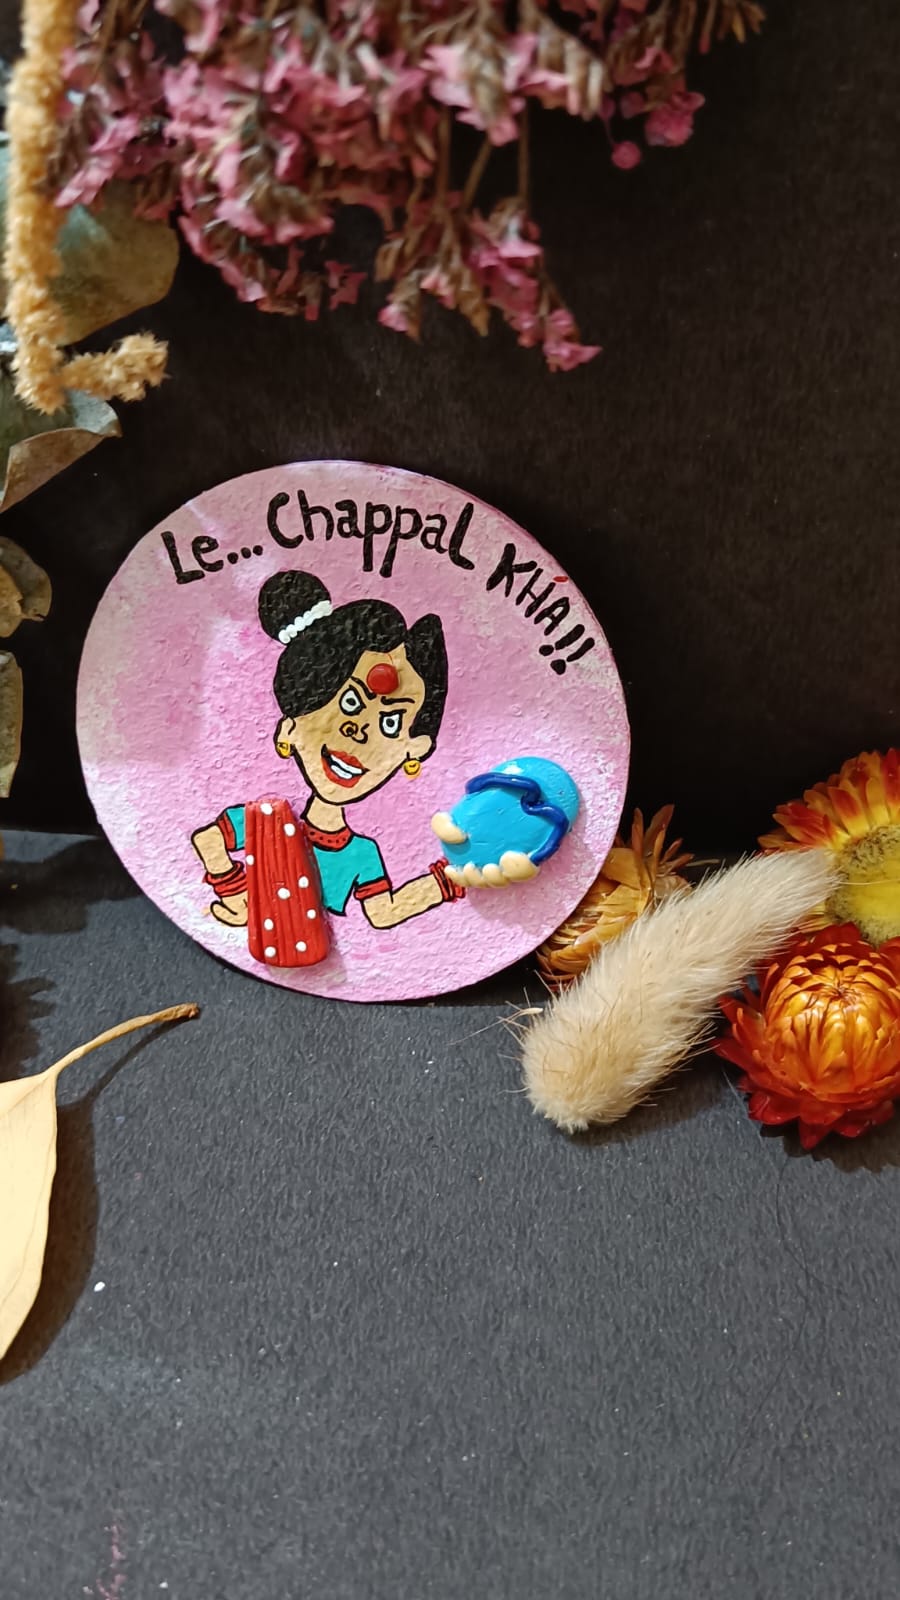 Le Chappal Kha – Fridge Magnet